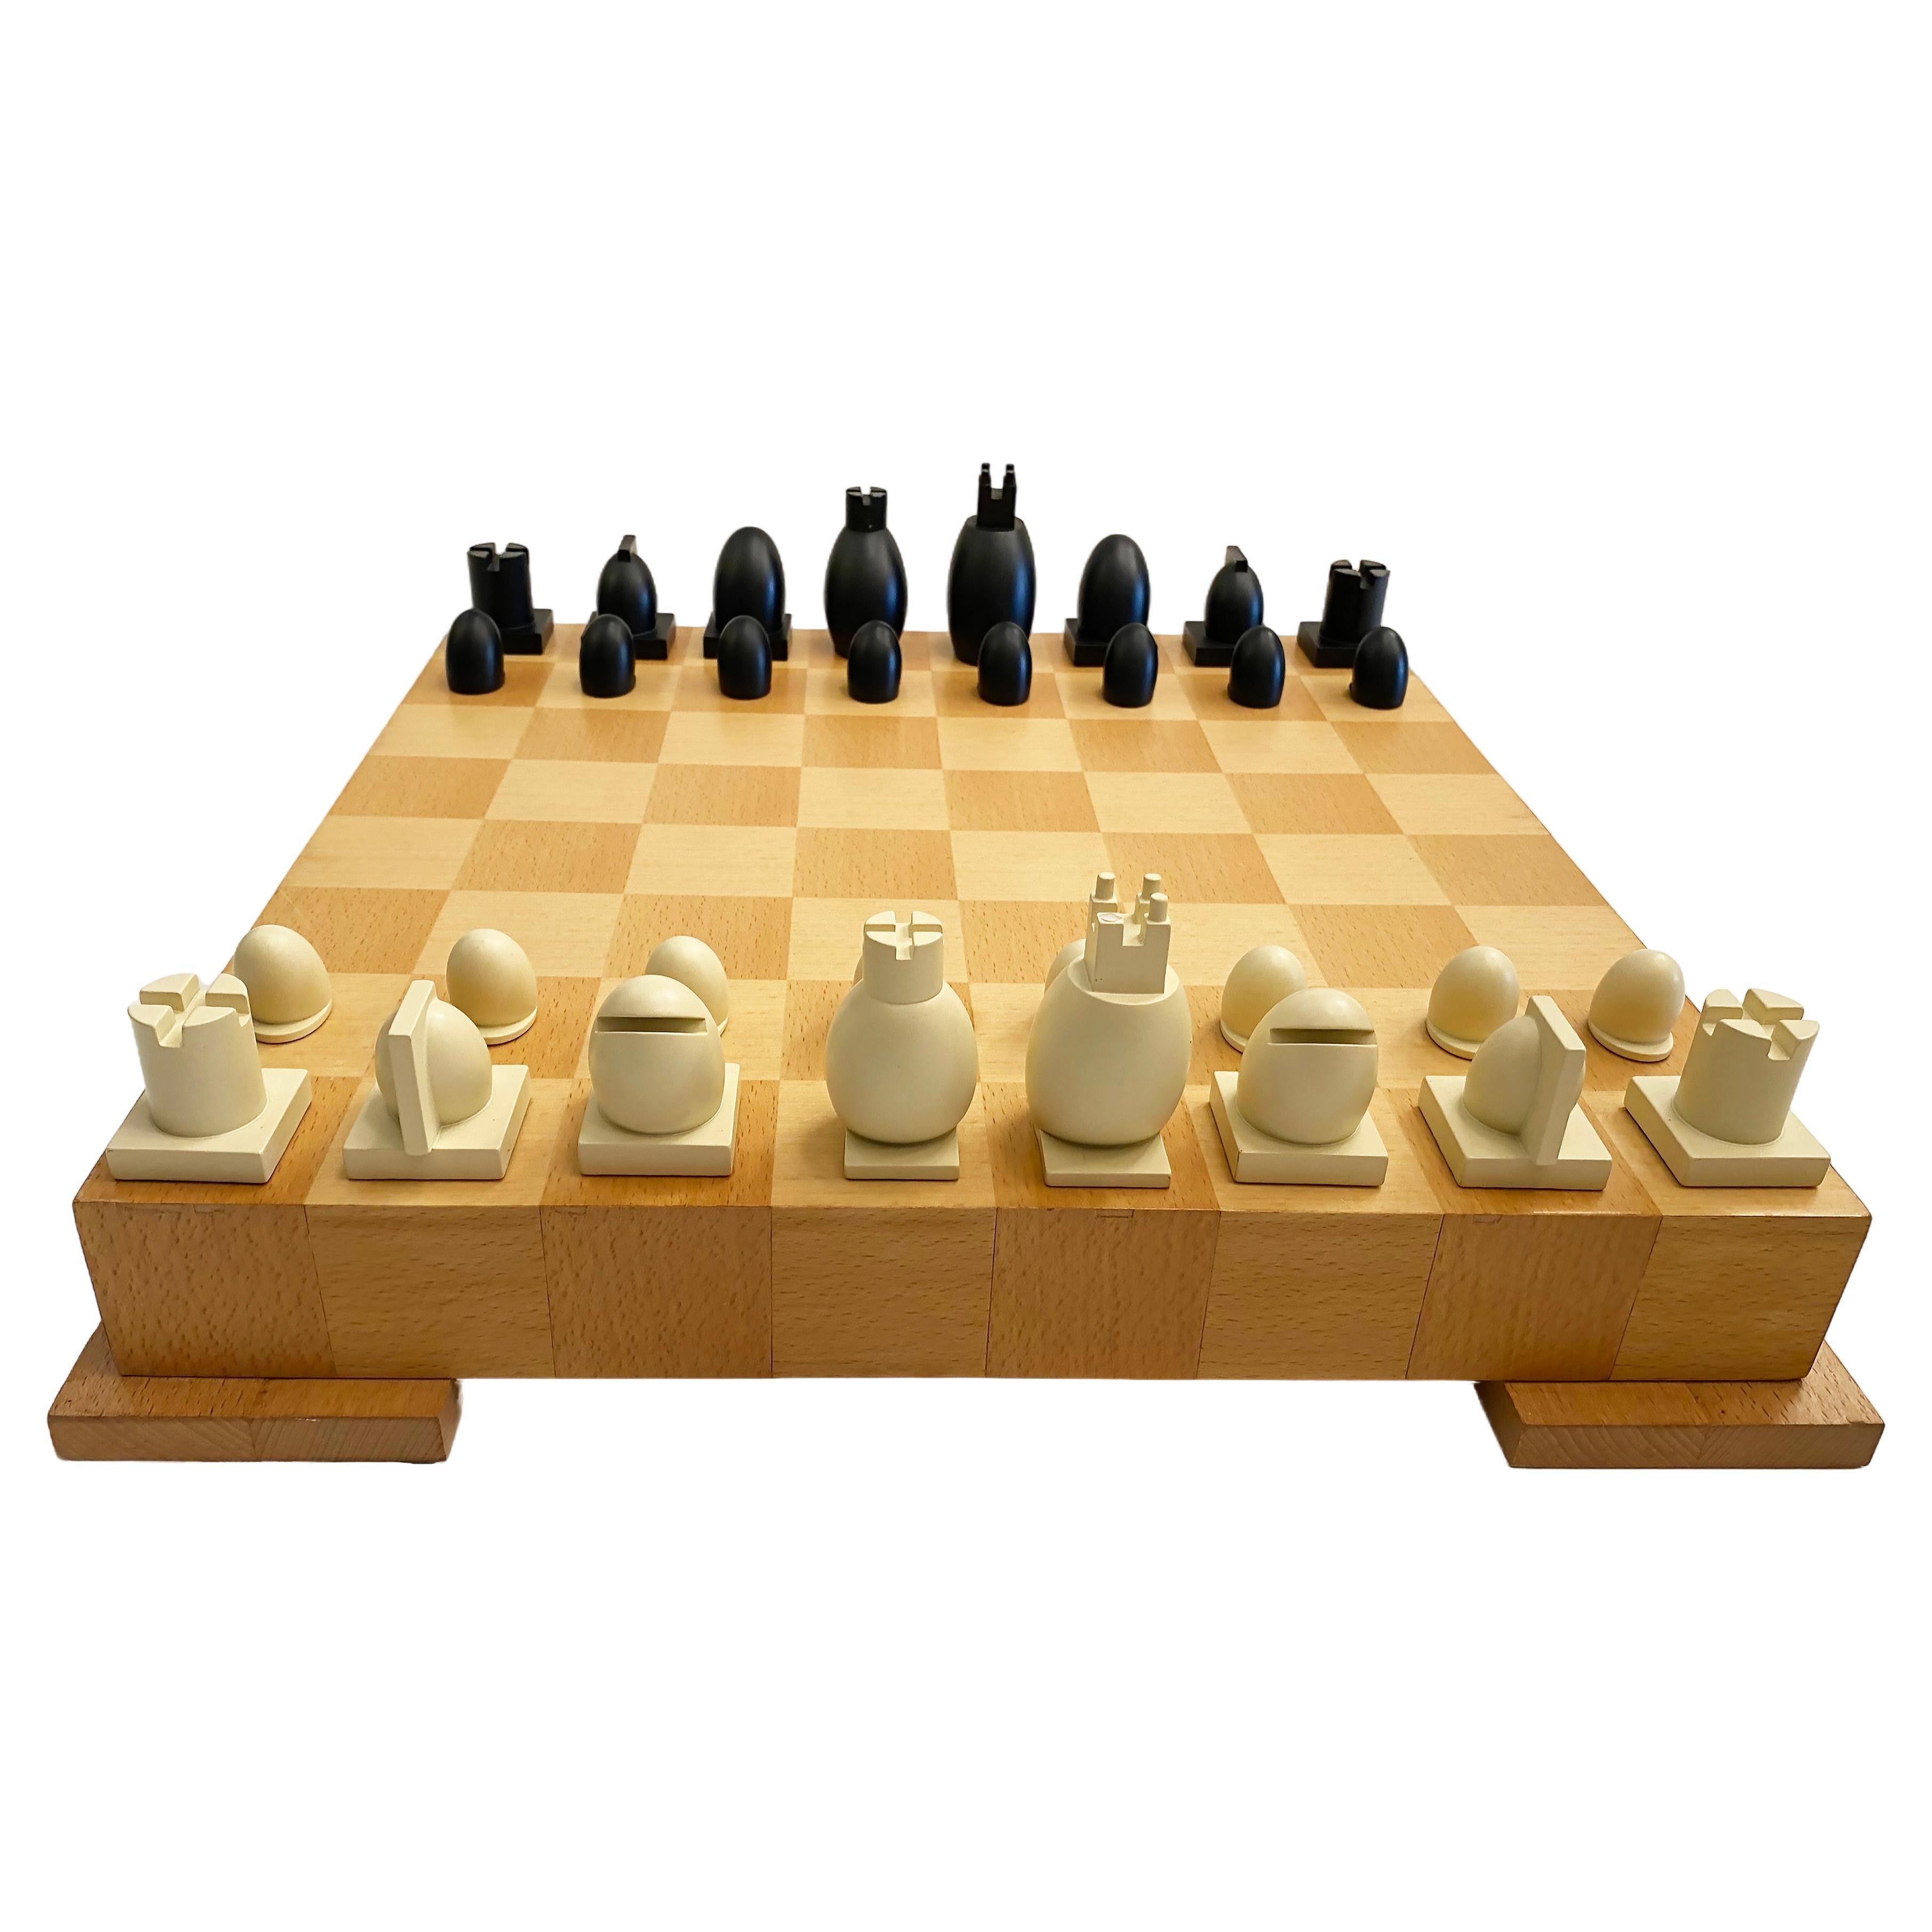 Michael Graves Post-modern Chess / Checkers Set Board Game and Pieces (Jeu d'échecs et de dames et pièces)